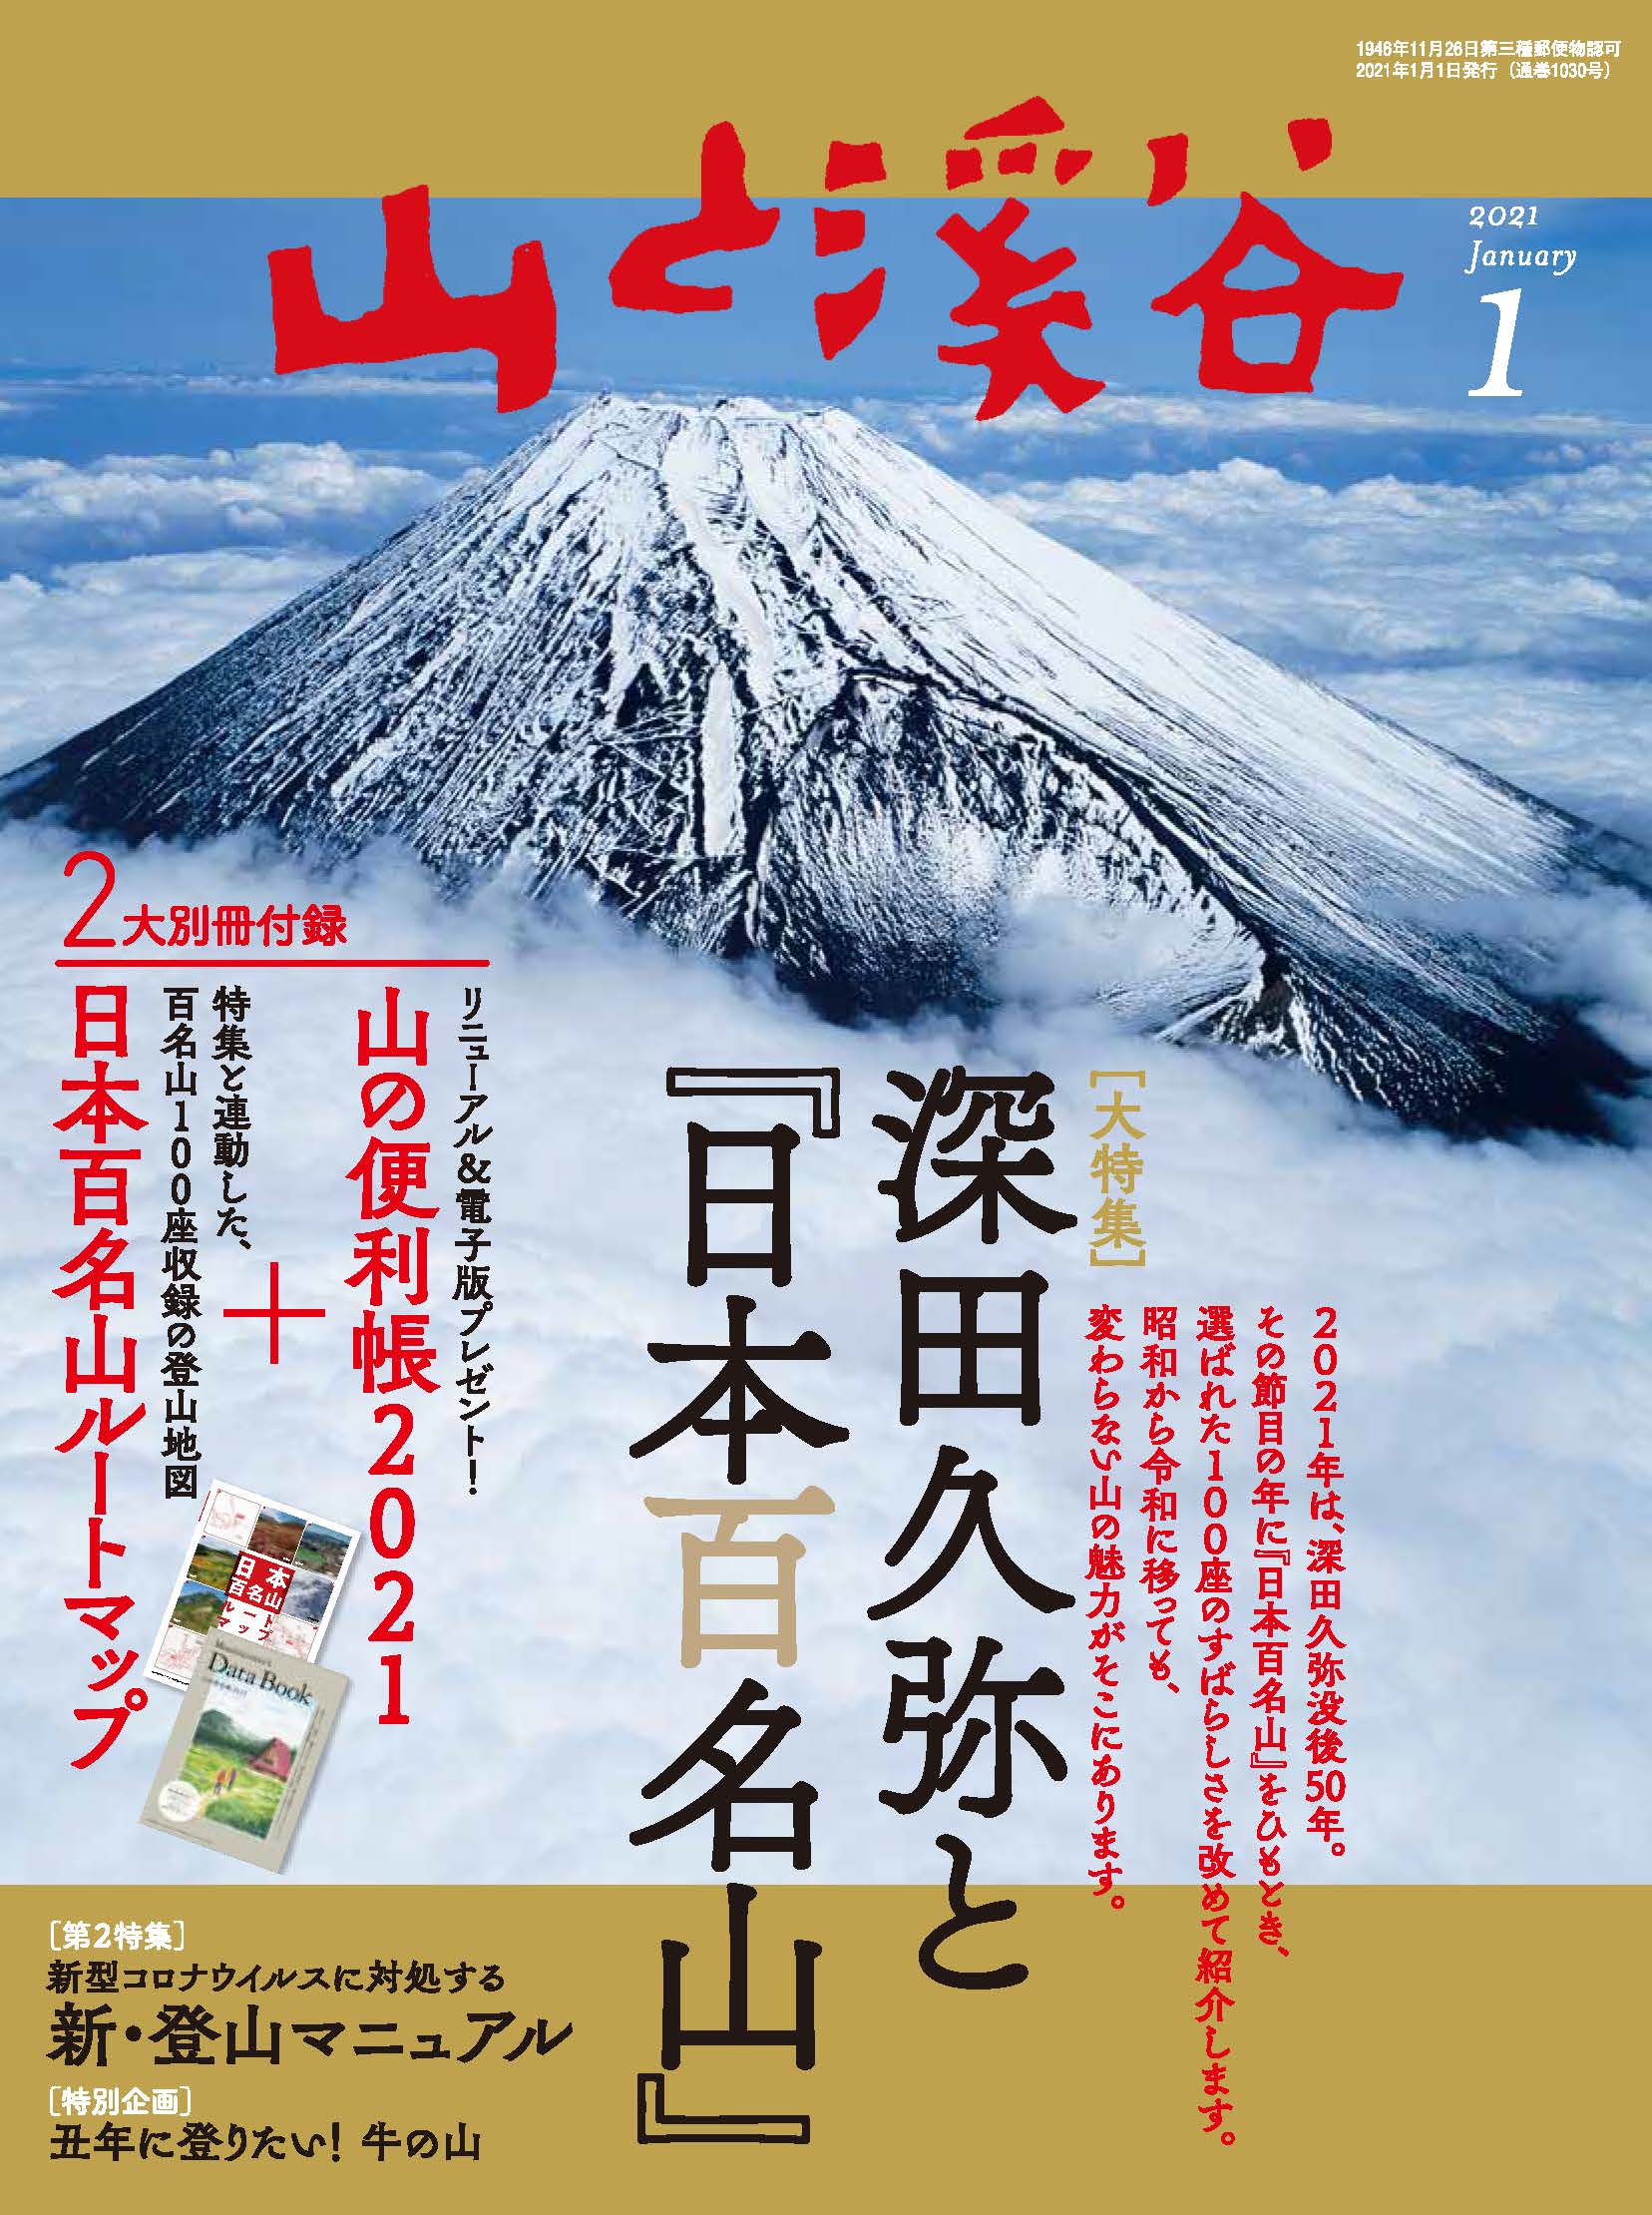 時代を超えて愛される 日本百名山 の魅力とは 山 と溪谷 21年1月号は大特集と2大付録で発売中 株式会社インプレスホールディングスのプレスリリース